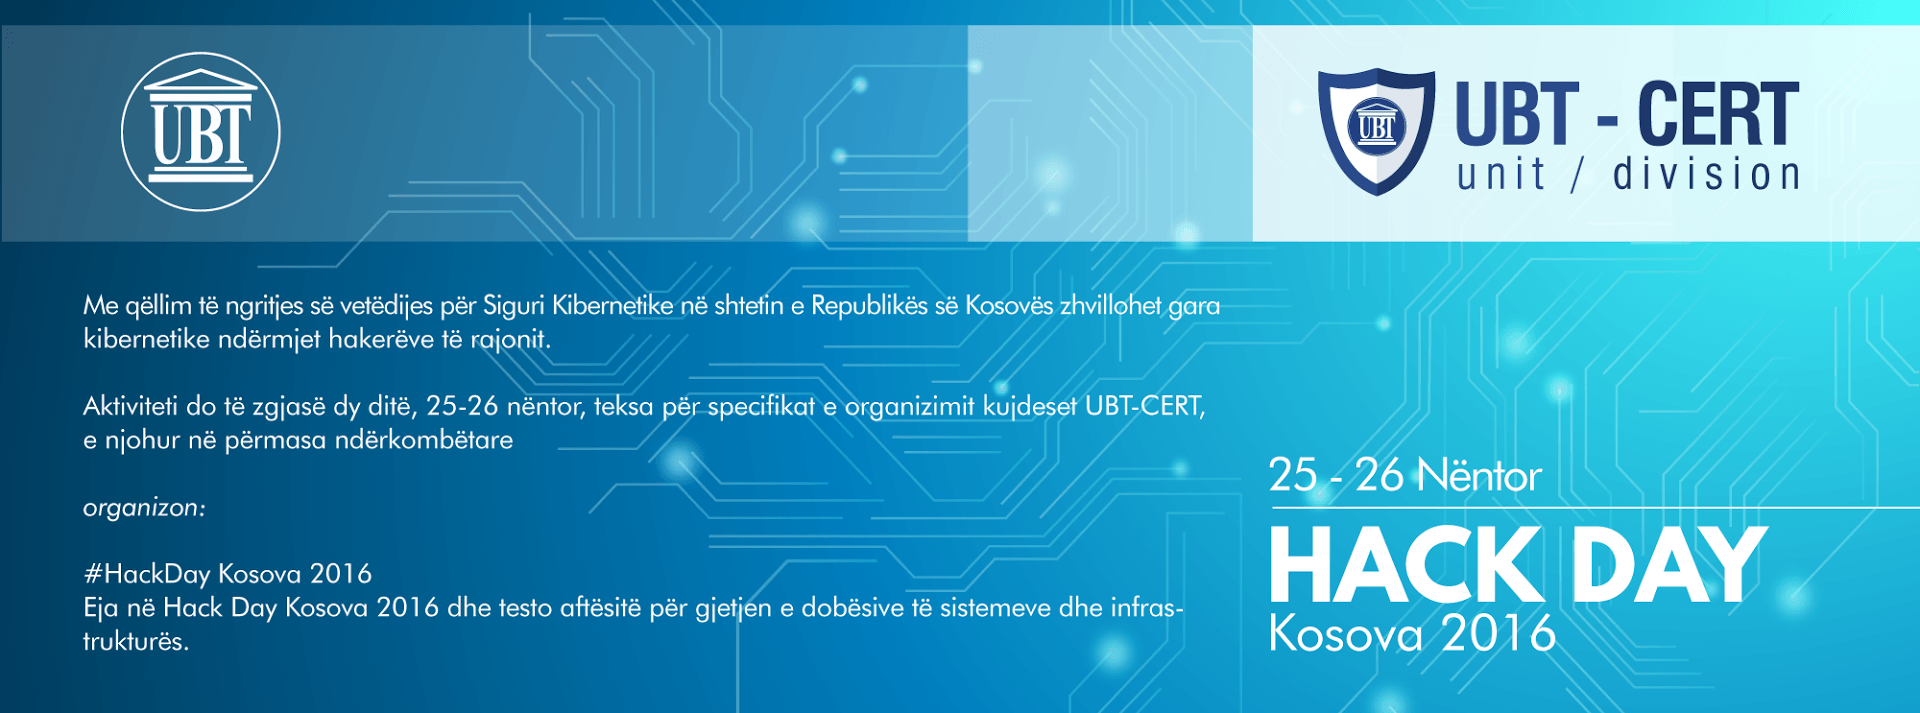 Lideri i sigurisë kibernetike në Kosovë, UBT-CERT, organizon aktivitetin “HackDay Kosova 2016”